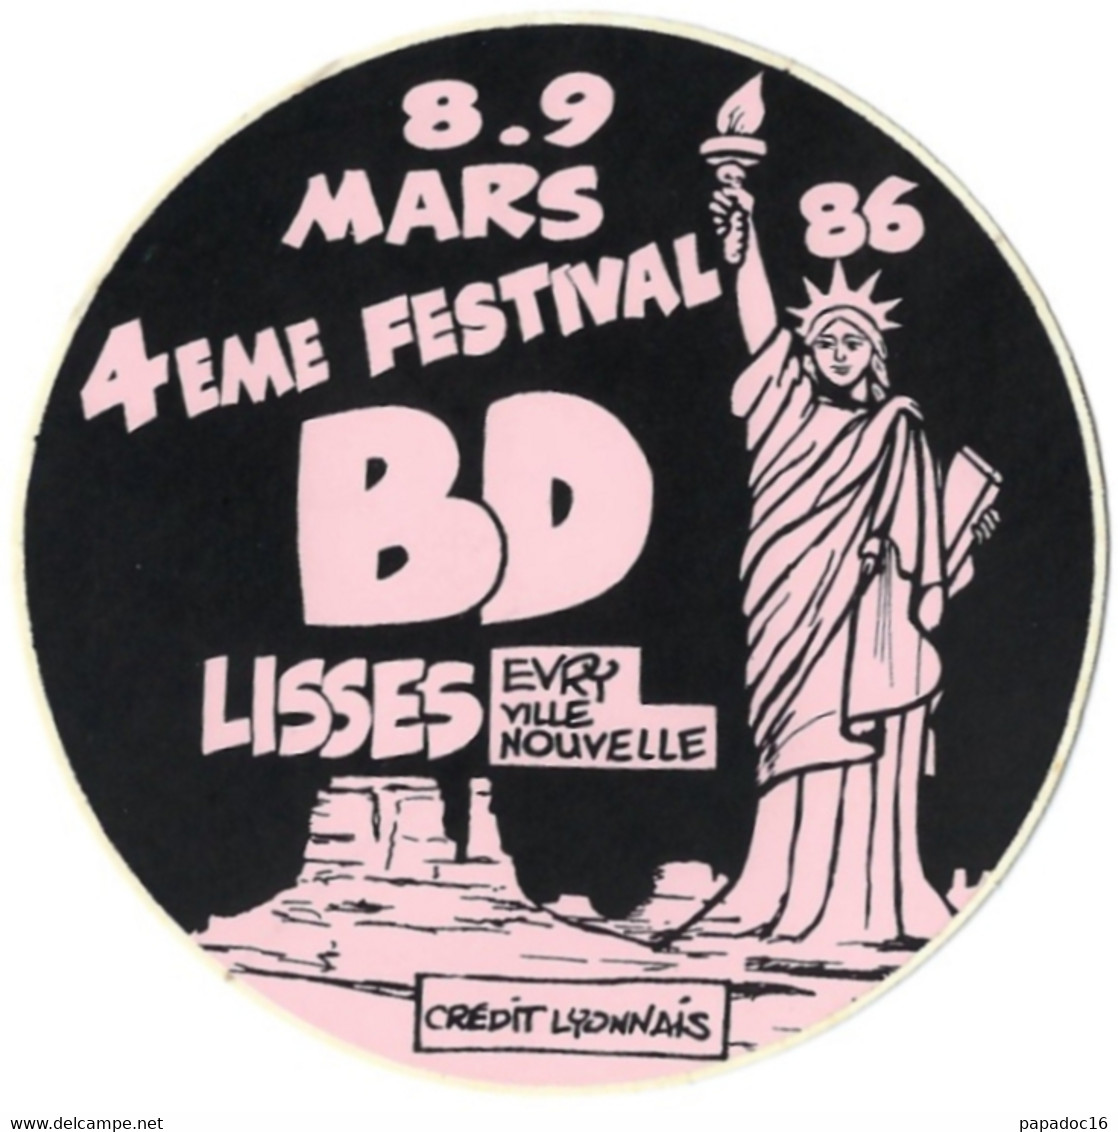 BD - Autocollant - 4eme Festival BD - Lisses - Evry Ville Nouvelle - 8-9 Mars 1986 [Crédit Lyonnais] - Stickers